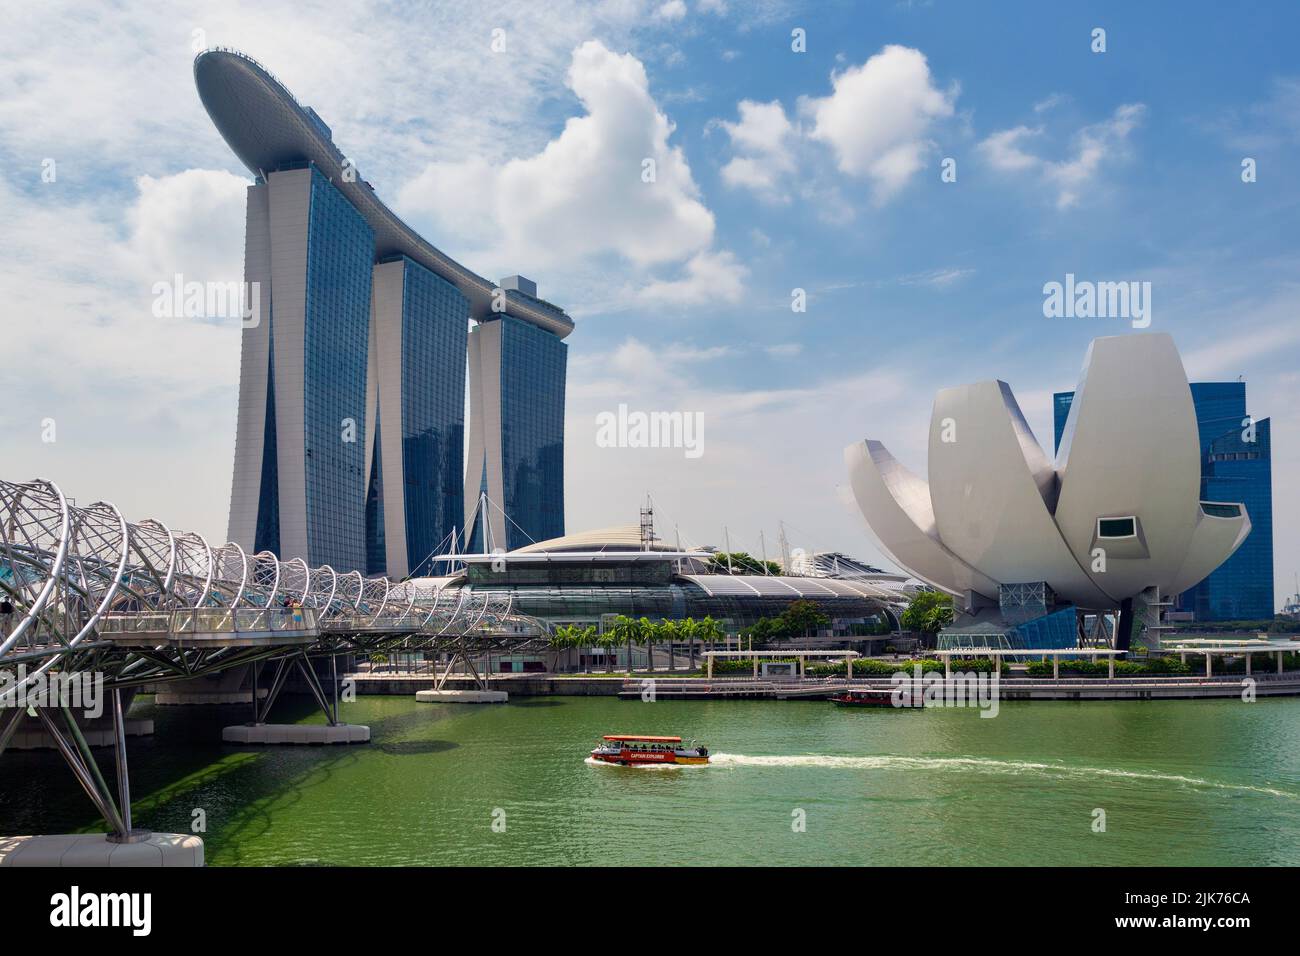 L'edificio Marina Bay Sands e (a destra) il museo ArtScience Repubblica di Singapore. Entrambi gli edifici sono stati progettati dall'architetto israeliano Moshe S. Foto Stock